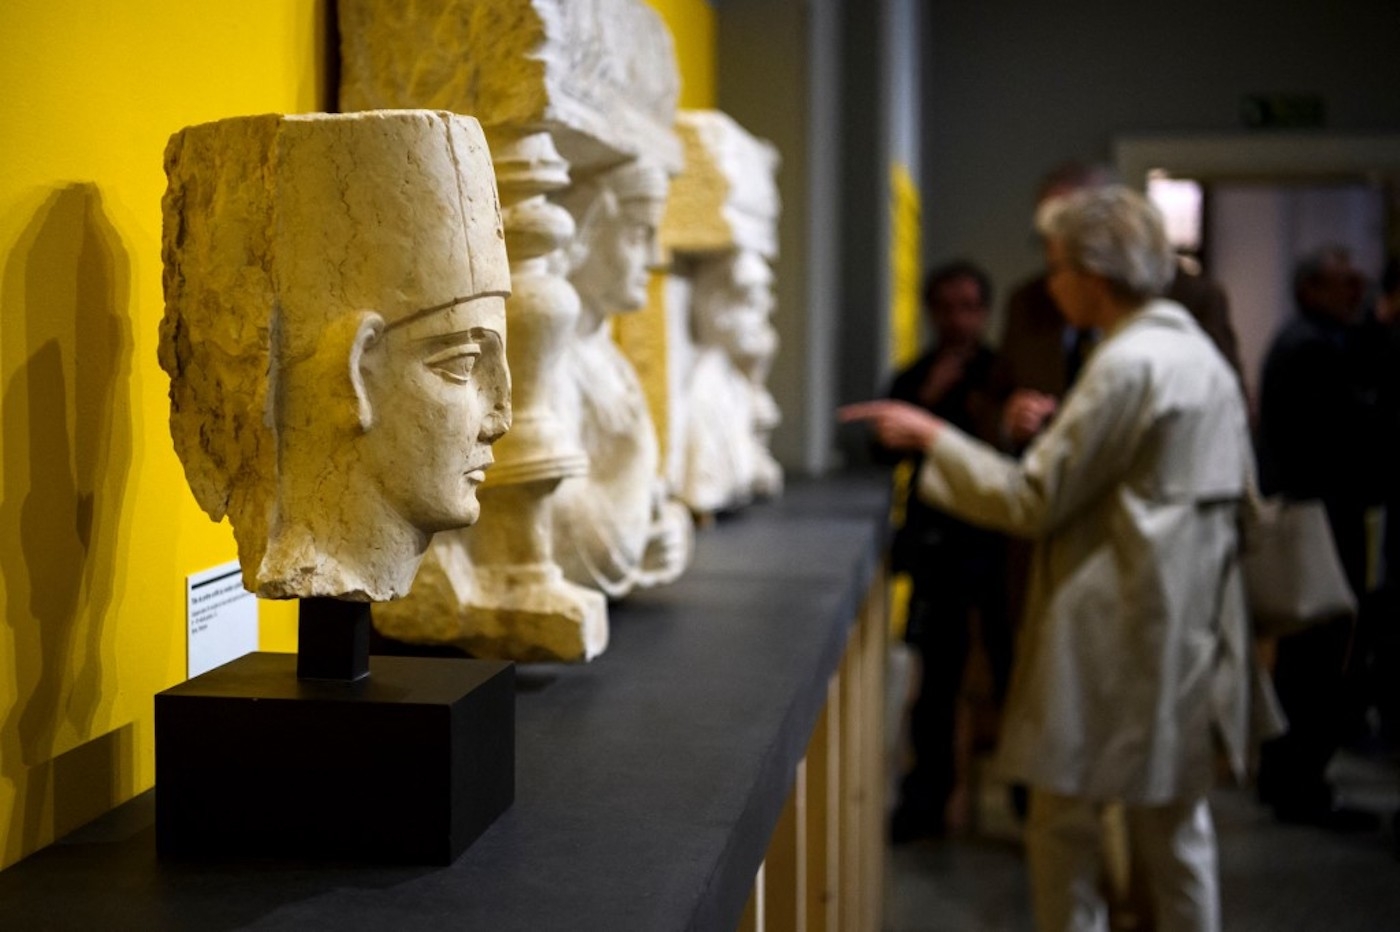 Pièces archéologiques de Palmyre découvertes lors d’un contrôle douanier en avril 2013 dans le complexe d’entrepôts de Genève Freeport, montrées lors d’une exposition sur le trafic illégal d’objets archéologiques le 14 mars, 2017 au Musée d’Art et d’Histoire de Genève, AFP